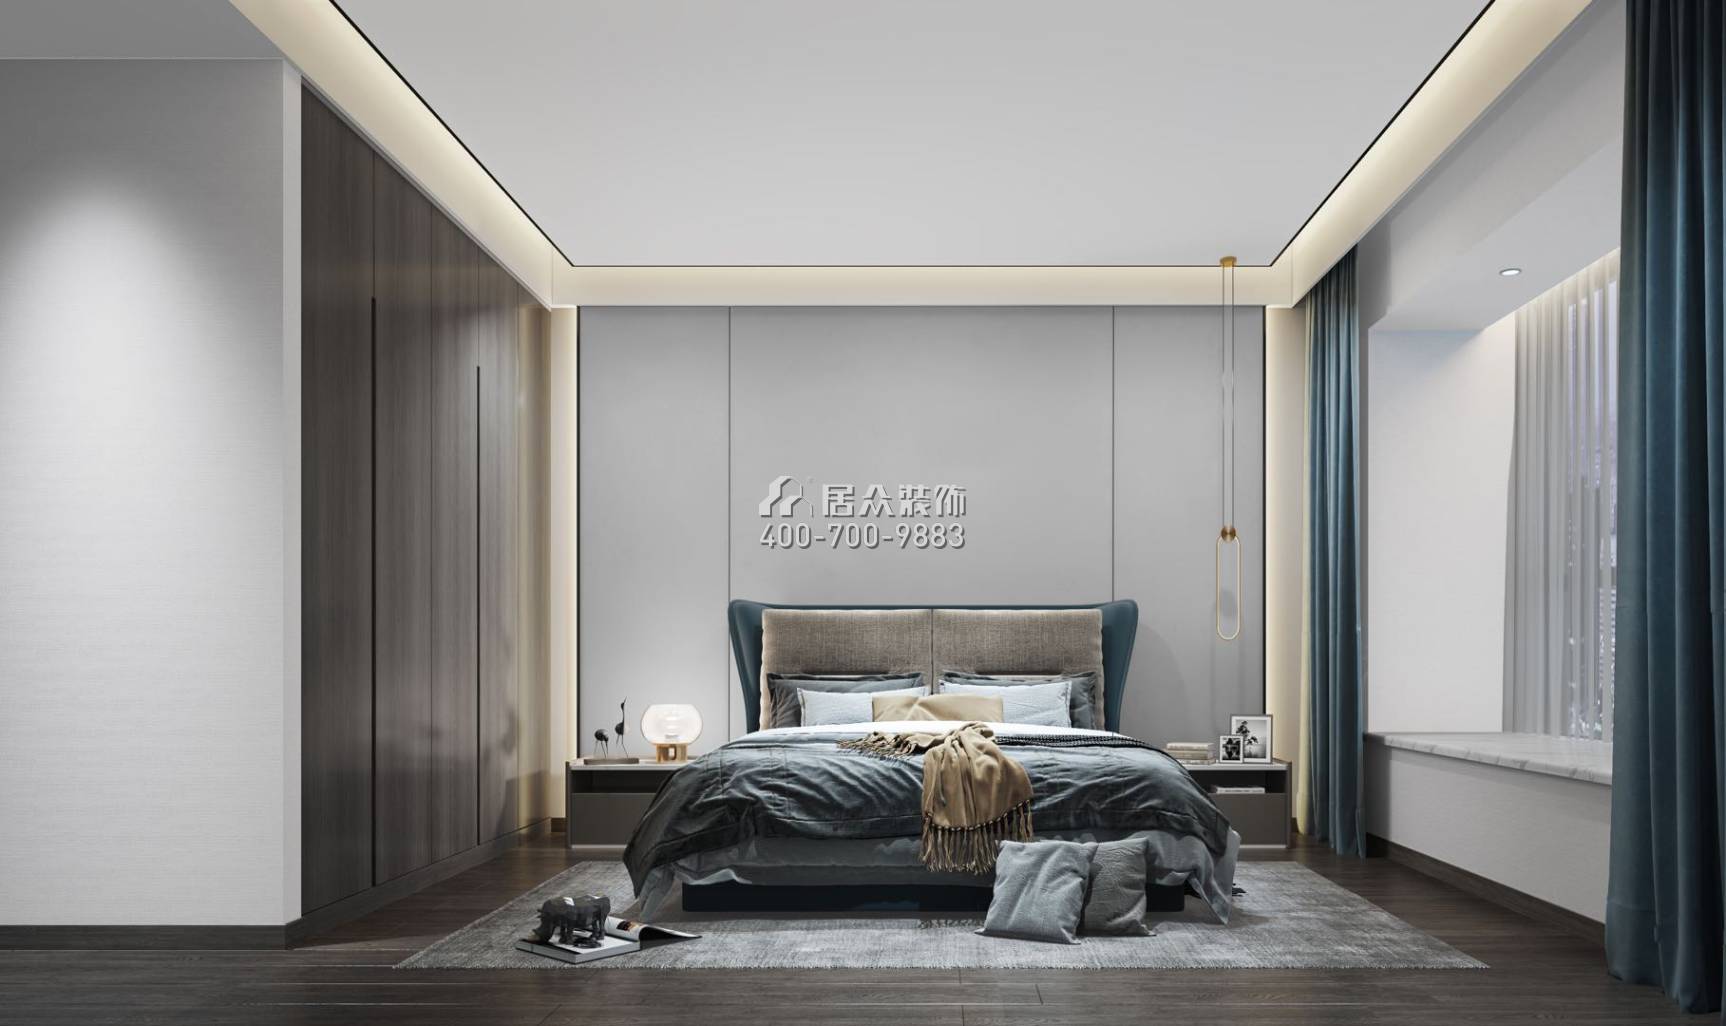 華發世紀城136平方米現代簡約風格躍式戶型臥室裝修效果圖